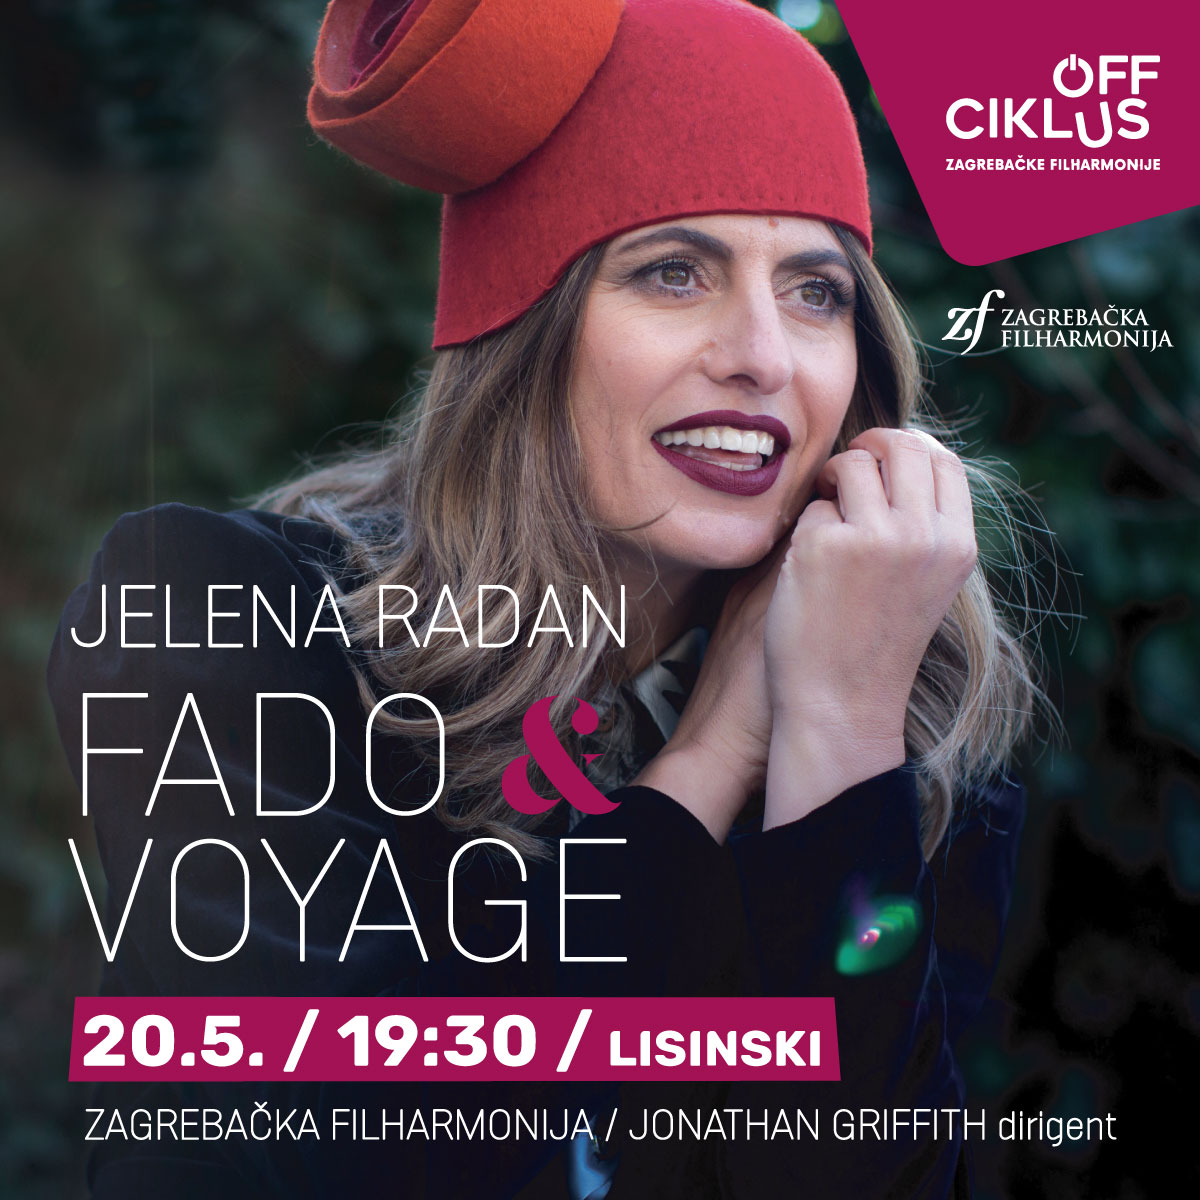 Fado & Voyage s potpisom Jelene Radan! Njezini koncerti uvijek su posebni glazbeni doživljaji, a najnoviji u Off ciklusu bit će i više od toga!